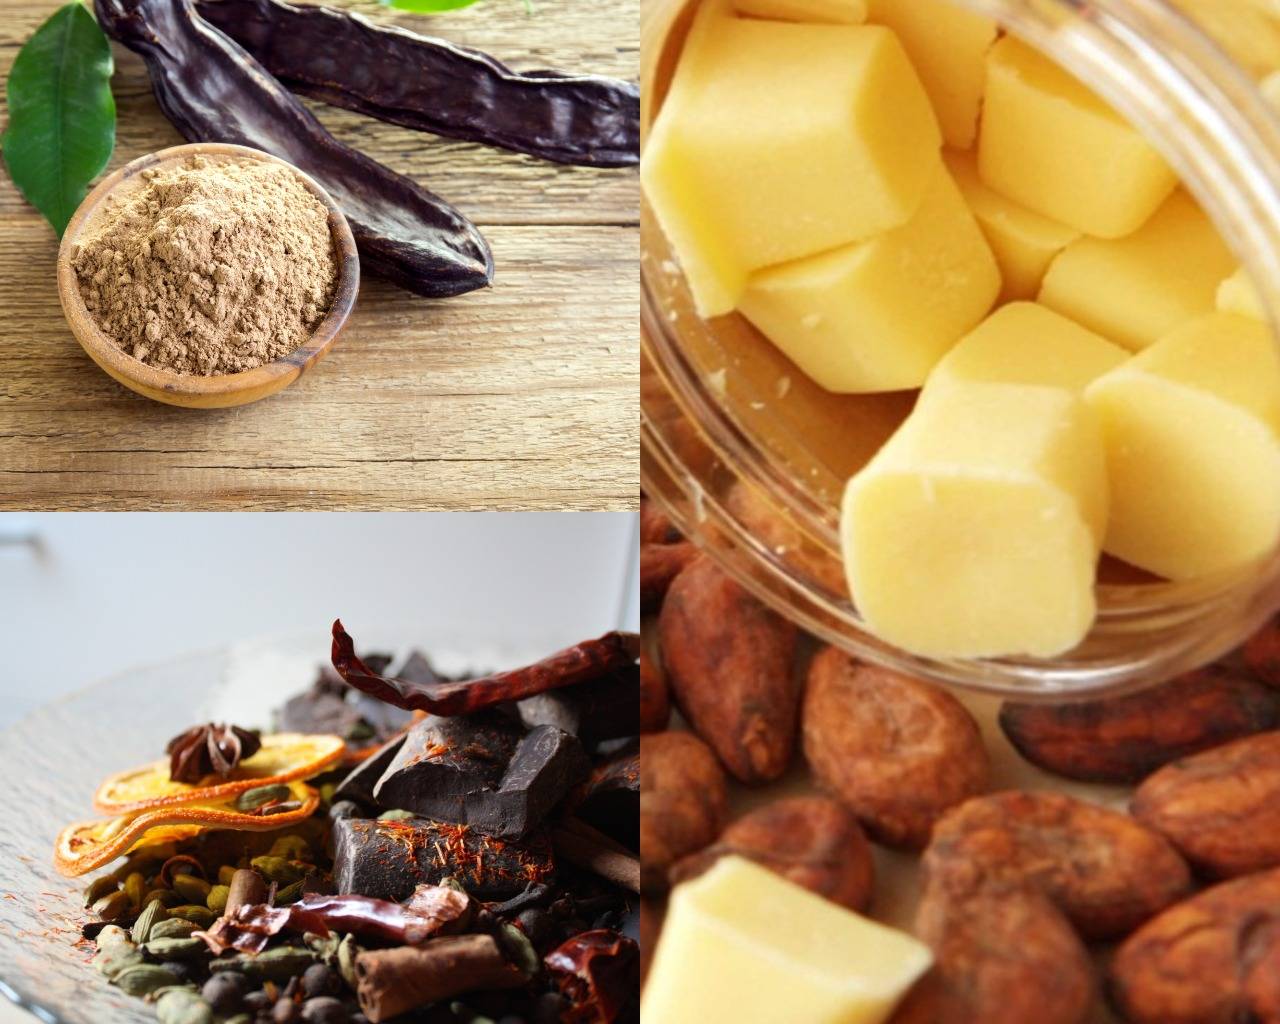 Какао – сорта, польза продуктов (масло, порошок, какао-бобы), применение в медицине, вред и противопоказания, рецепт напитка. фото шоколадного дерева и плодов какао